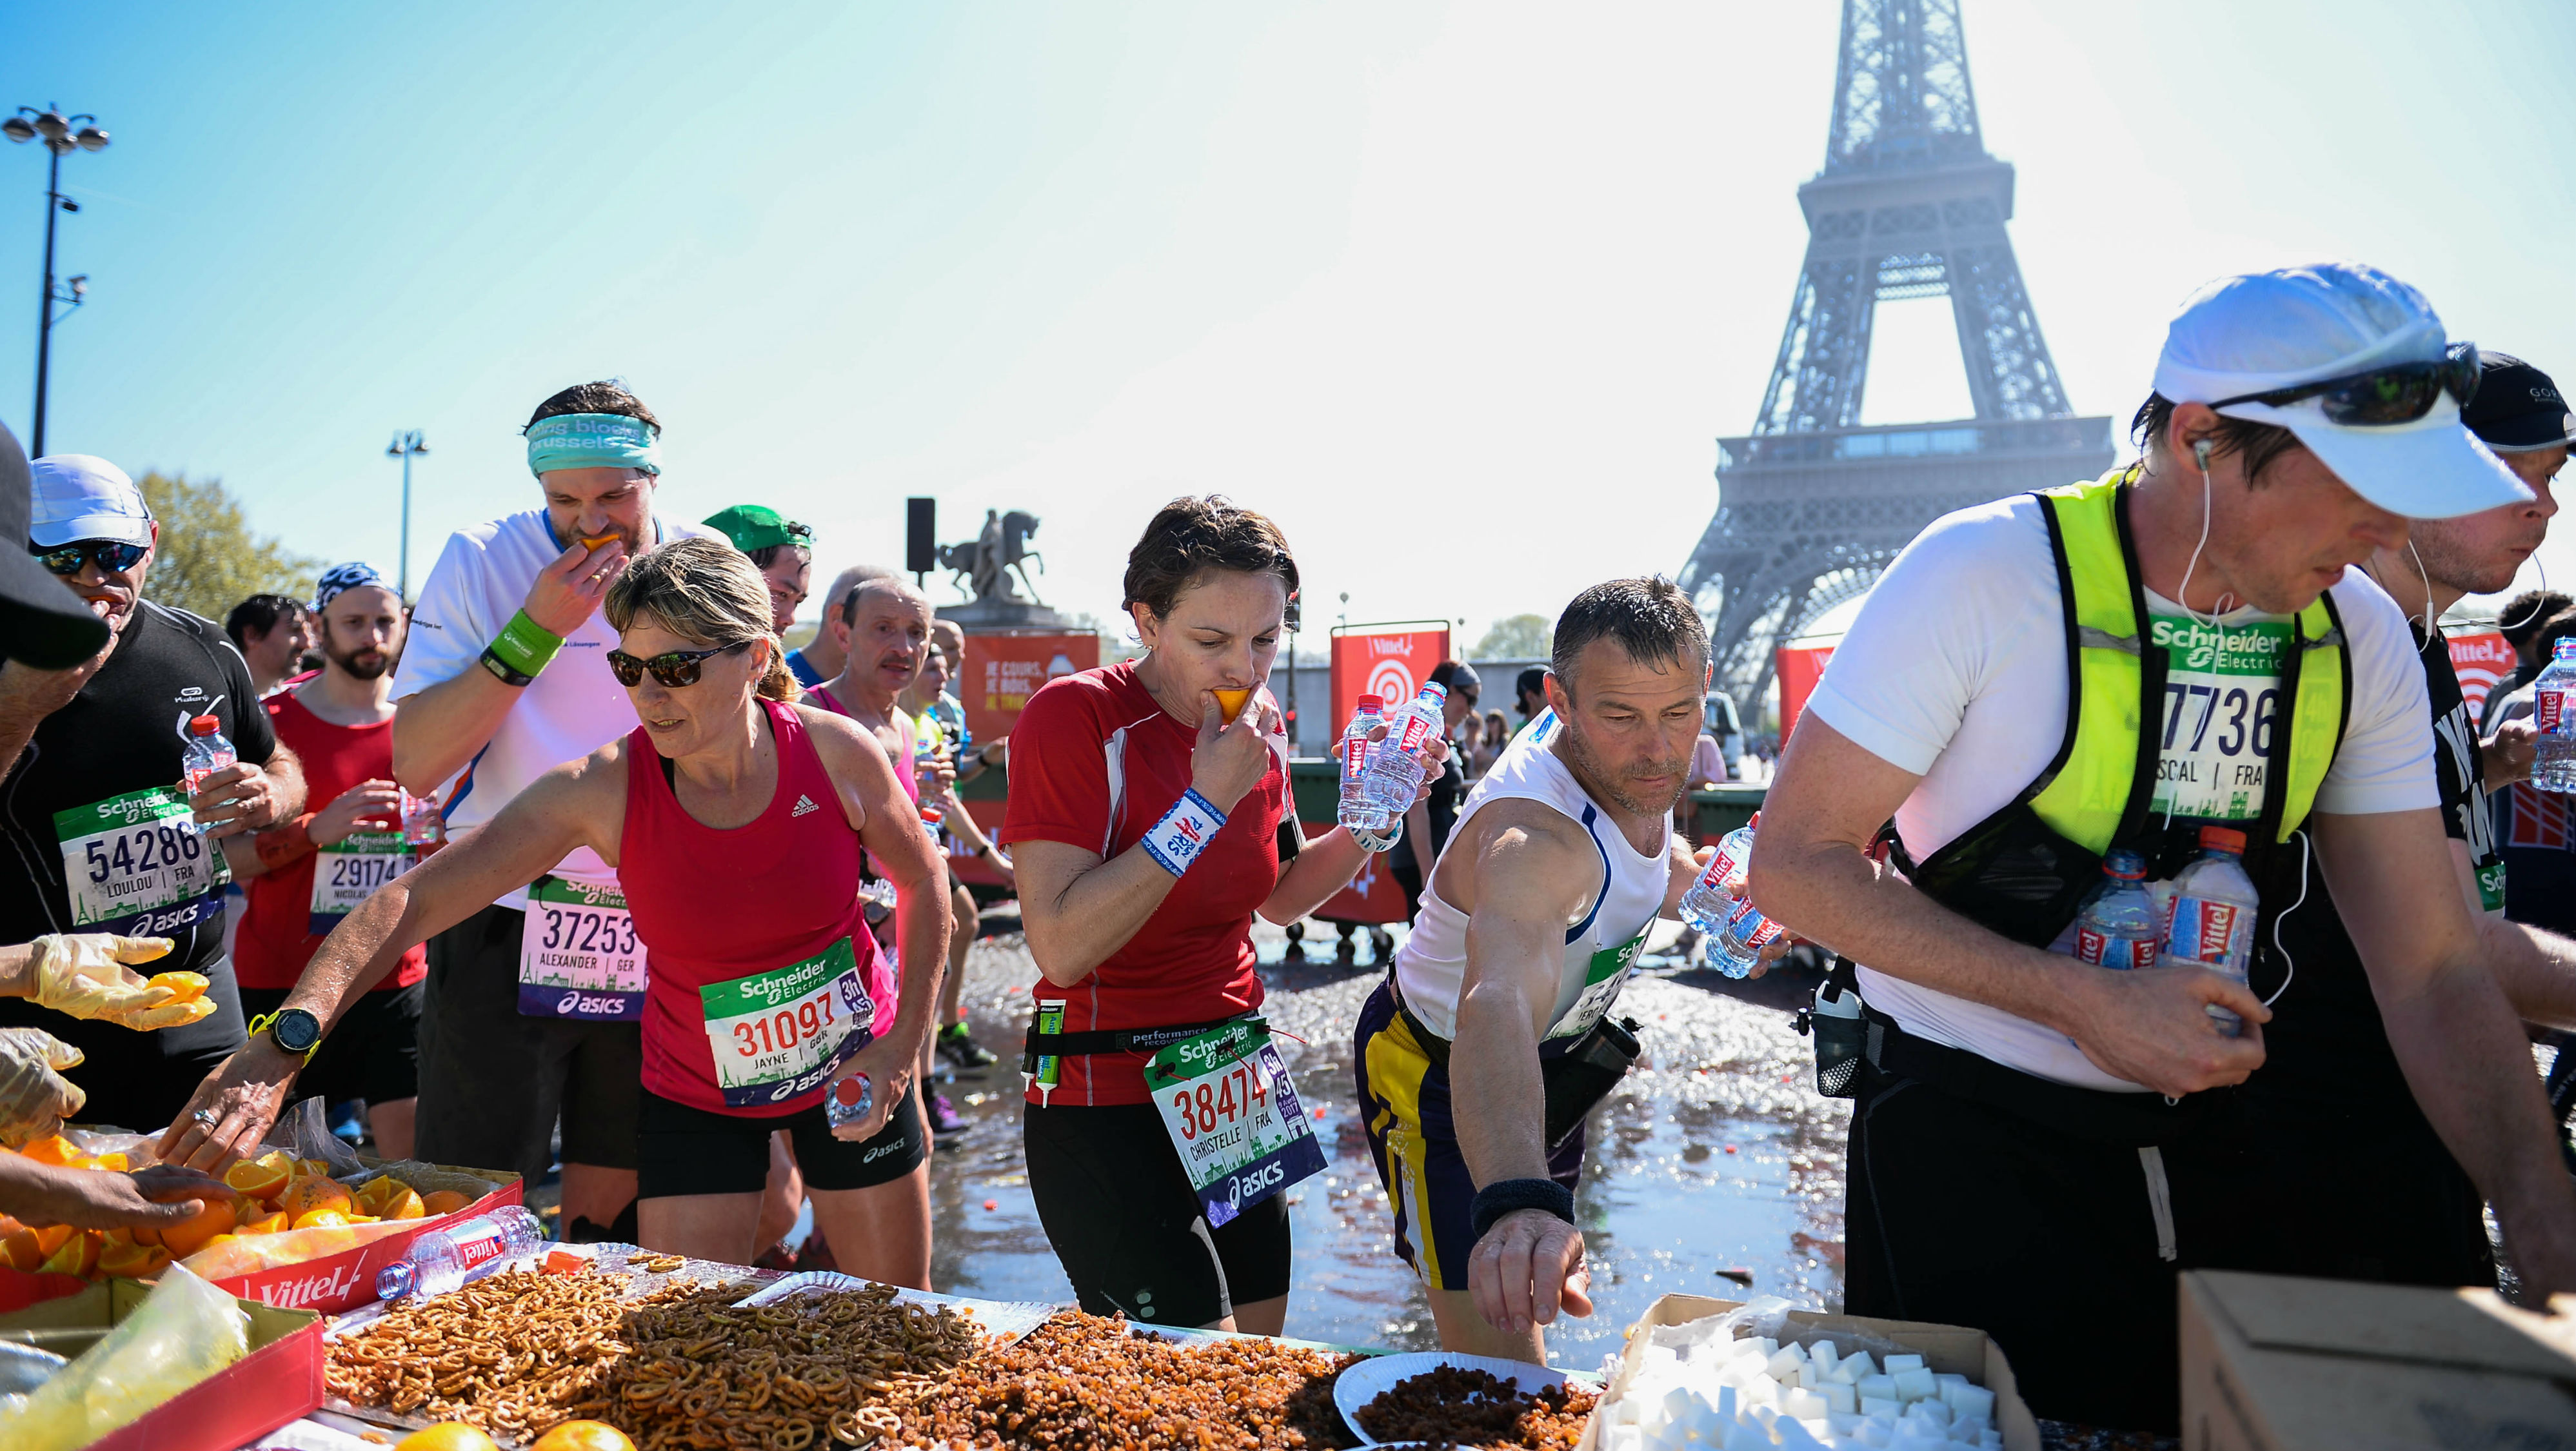 Paris marathon 2017